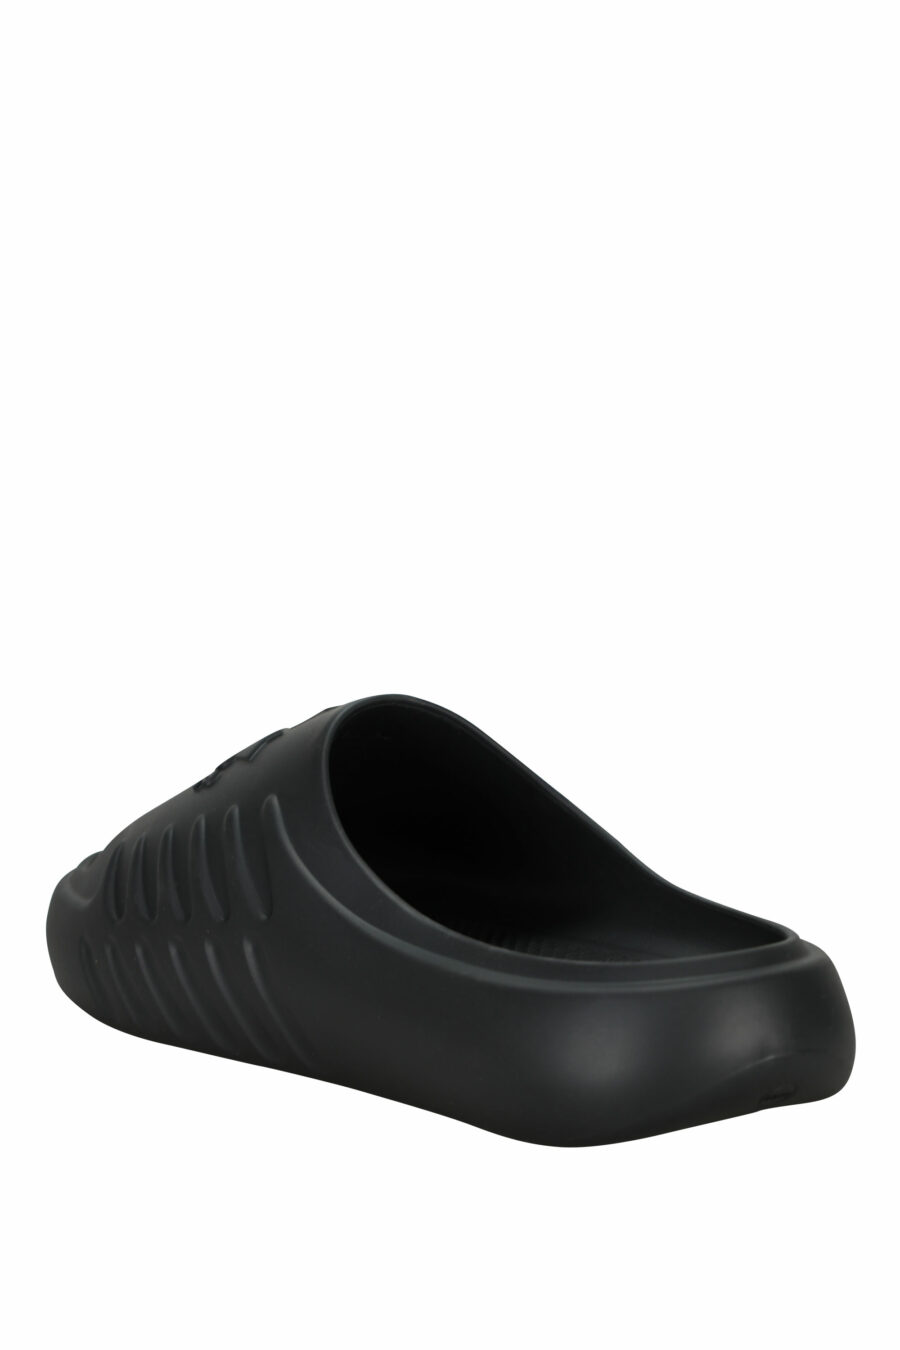 Schwarze Gummi-Flip-Flops mit einfarbigem Logo - 8055777295403 3